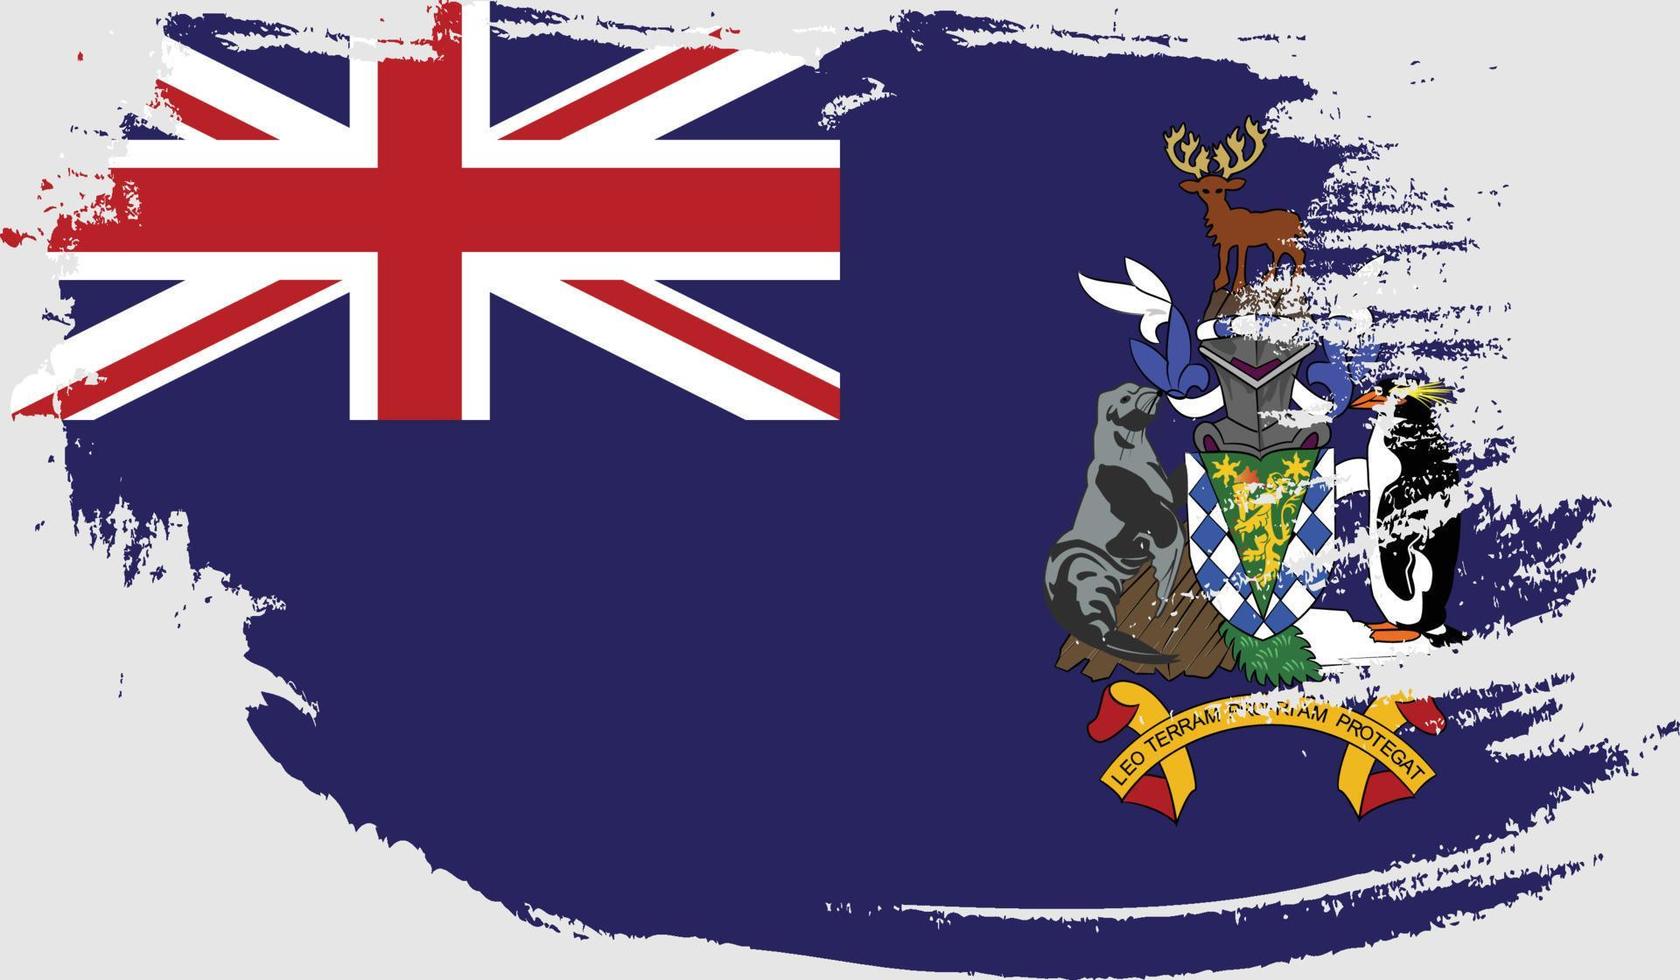 southgeorgia y la bandera de las islas sandwich del sur con textura grunge vector